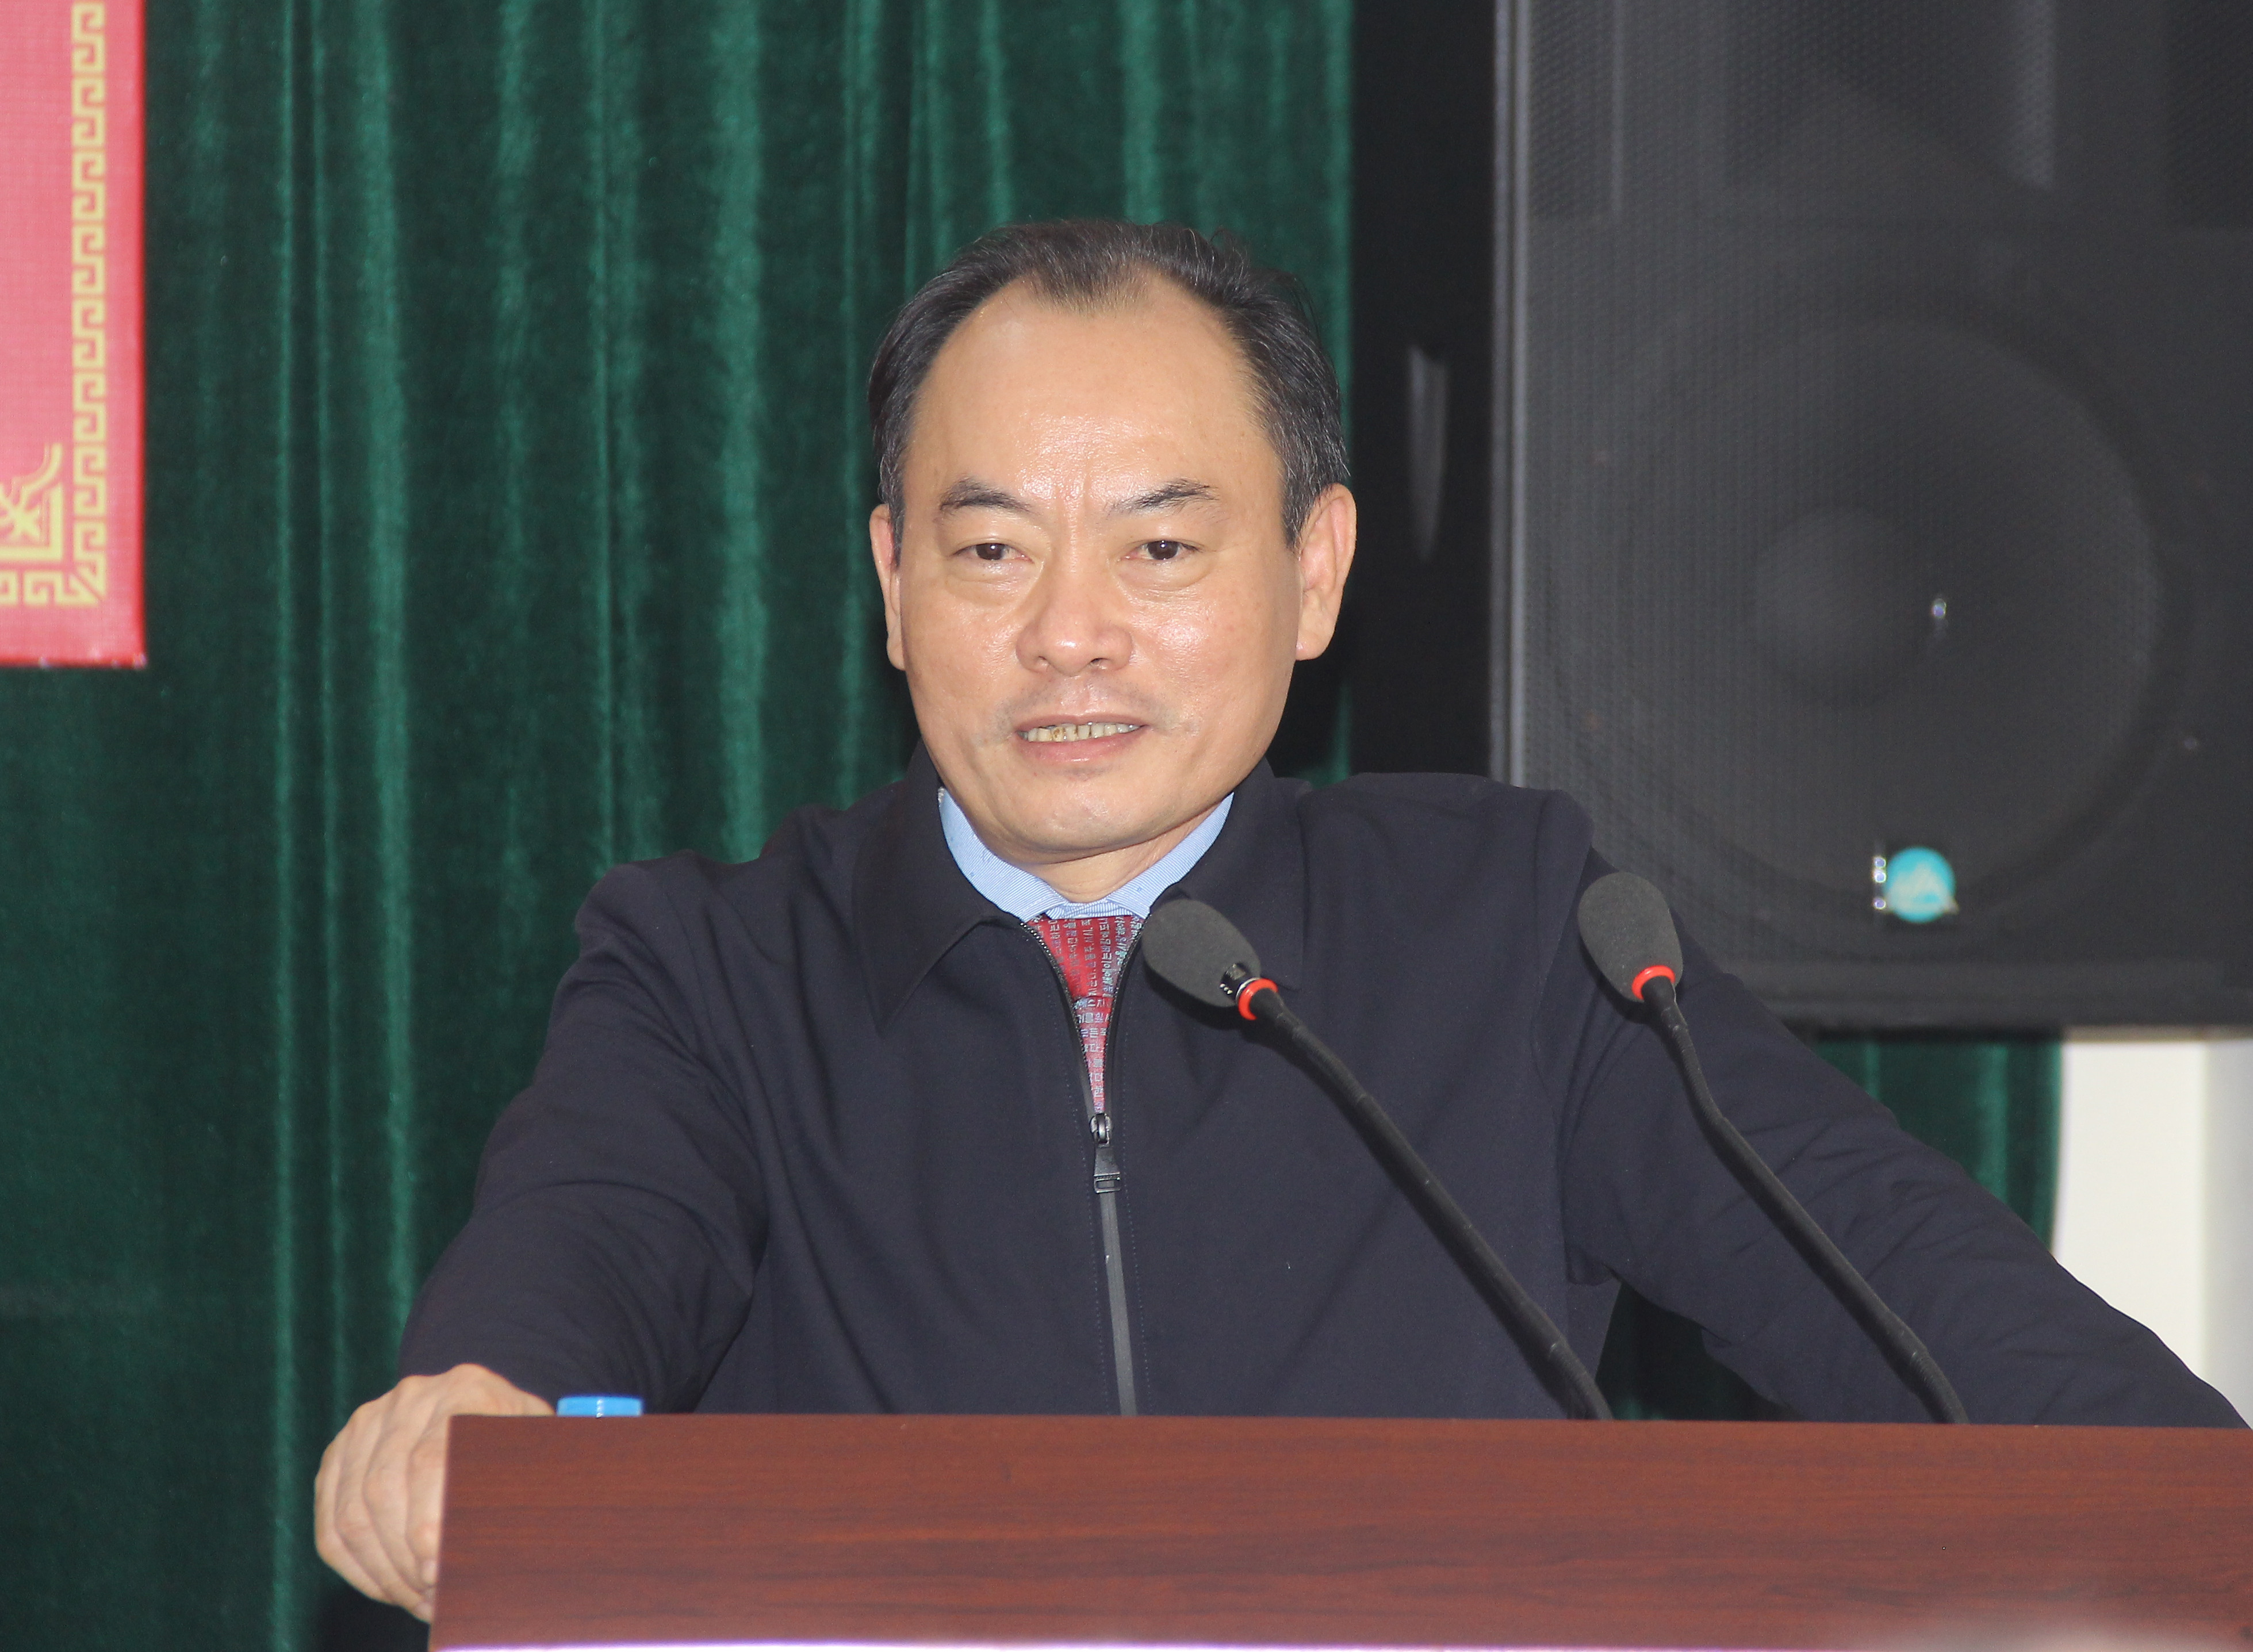 Đồng chí Lê Tiến Trị - Bí thư Đảng ủy, Trưởng ban quản lý KKT Đông Nam phát biểu khai mạc hội nghị. Ảnh: Mai Hpa